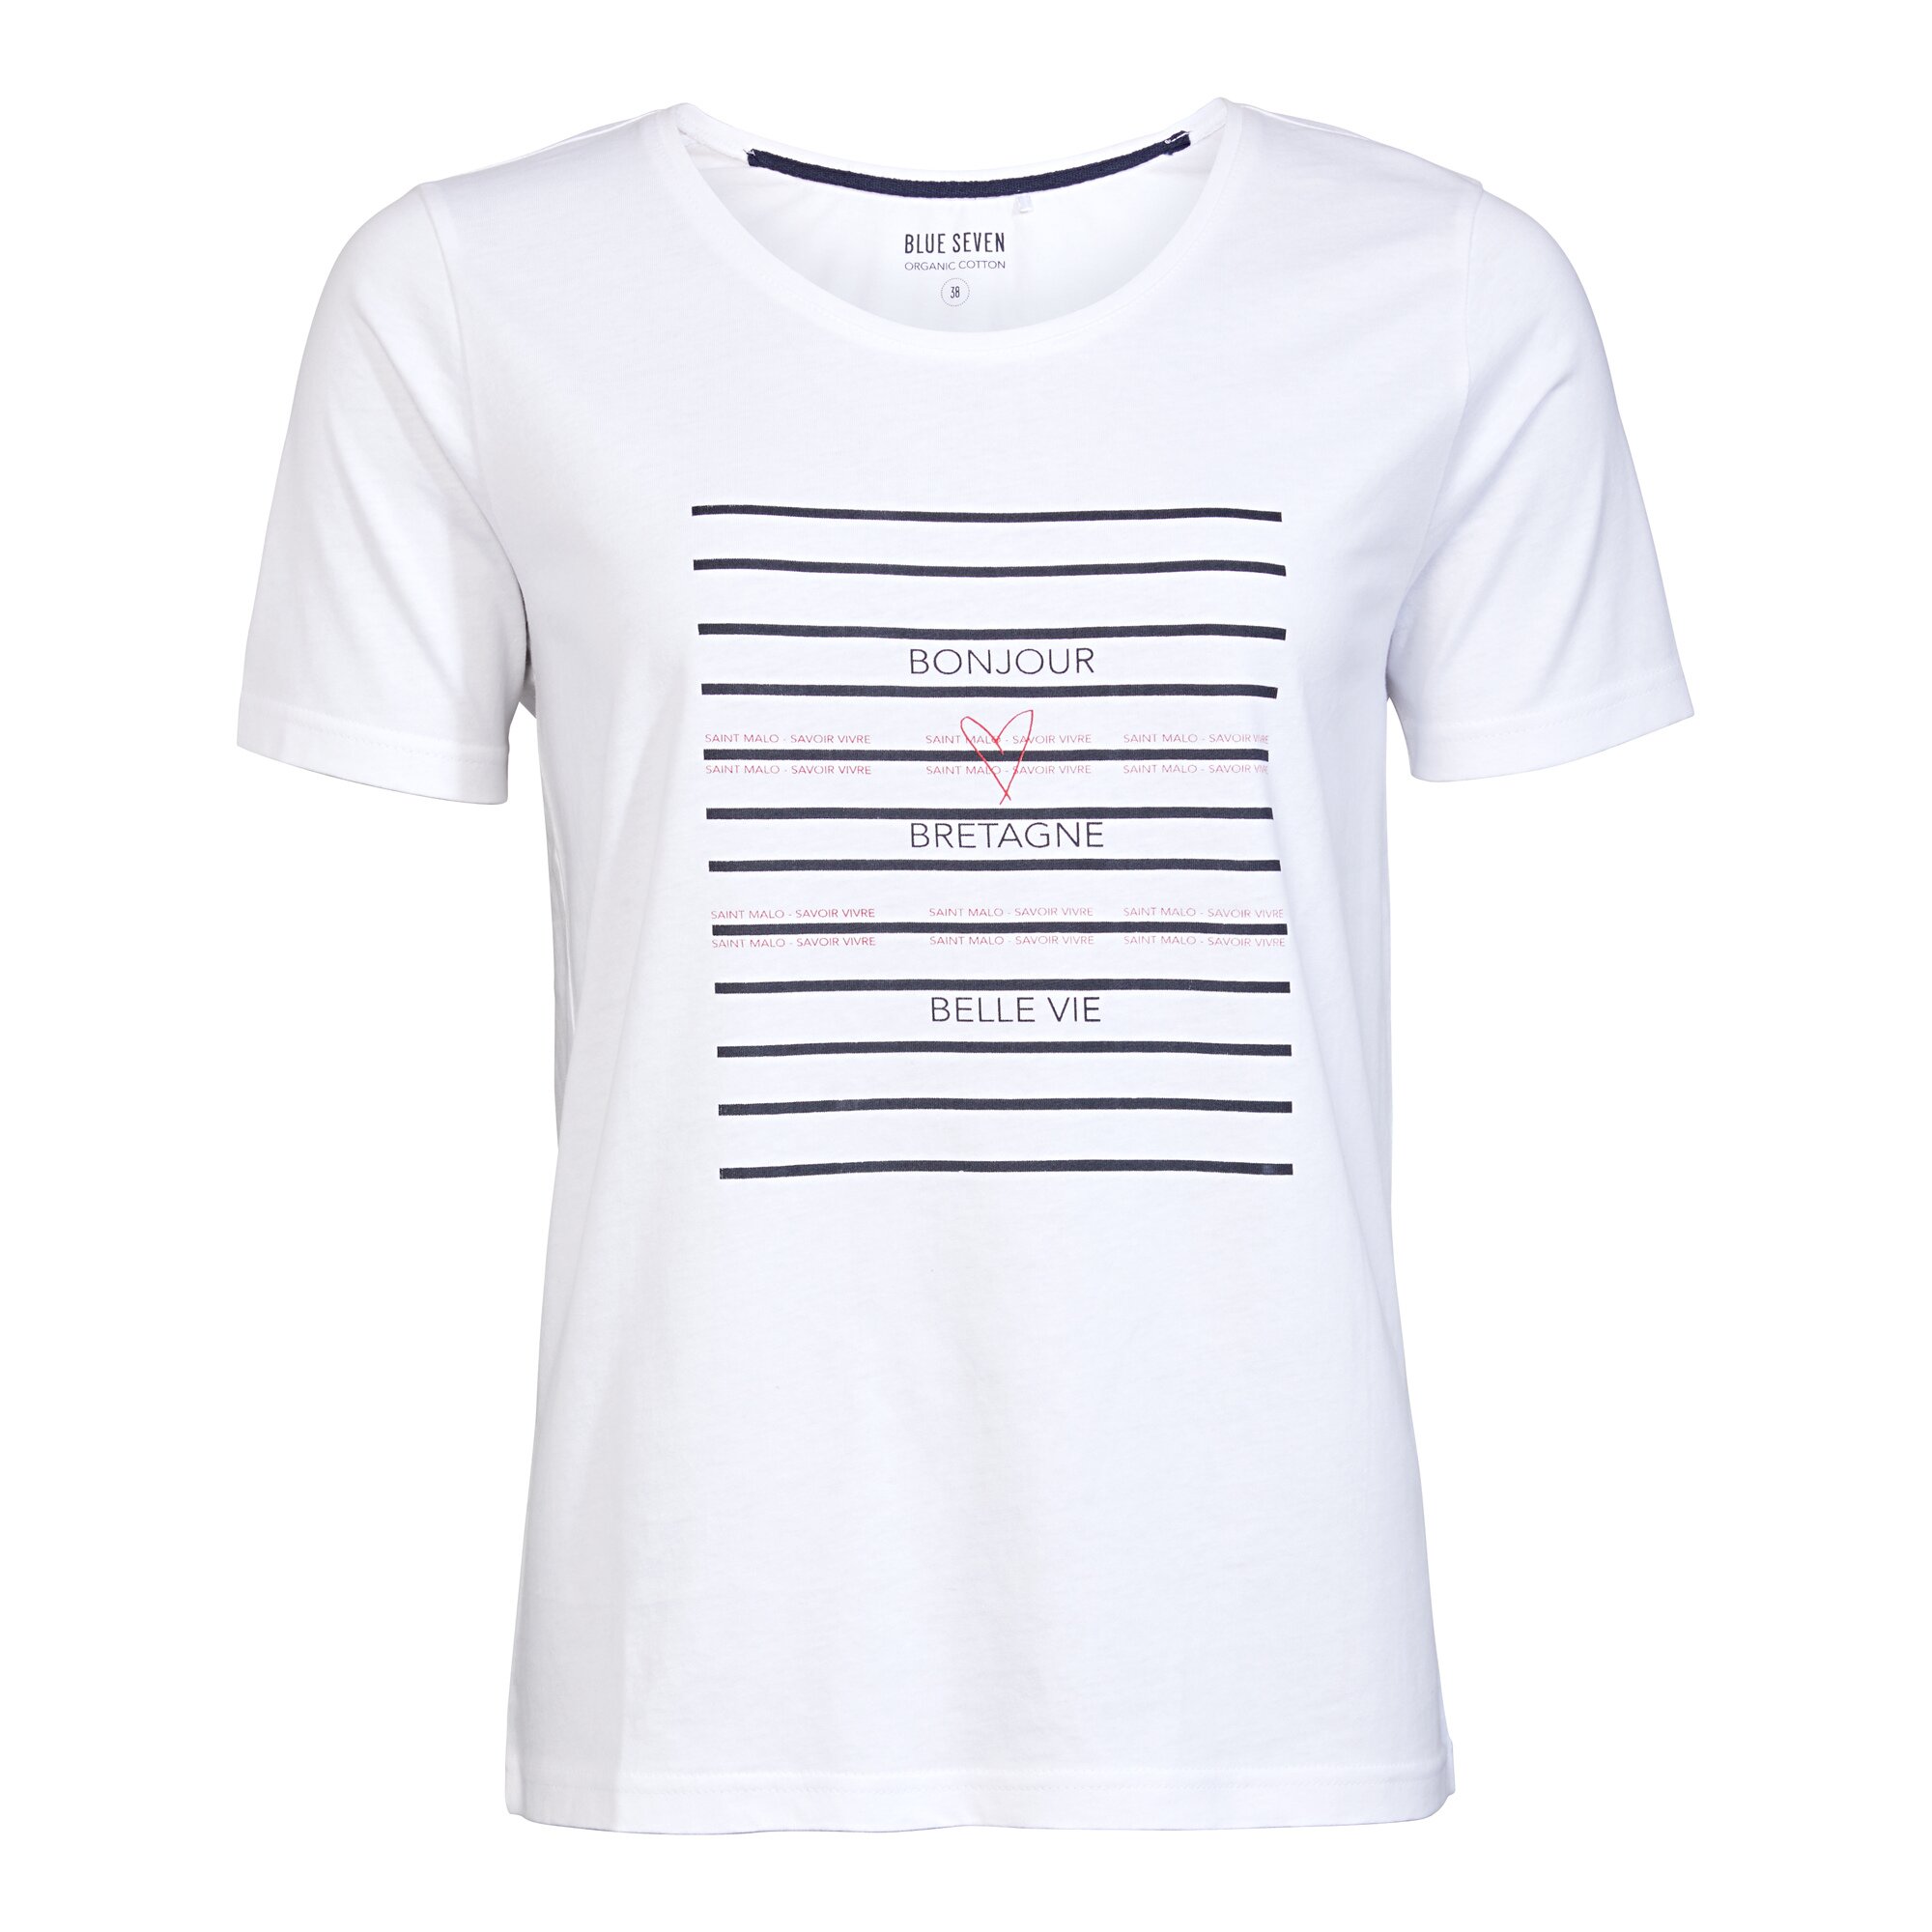 Image of Damen-T-Shirt "Saint Malo", Größe: 38, weiß